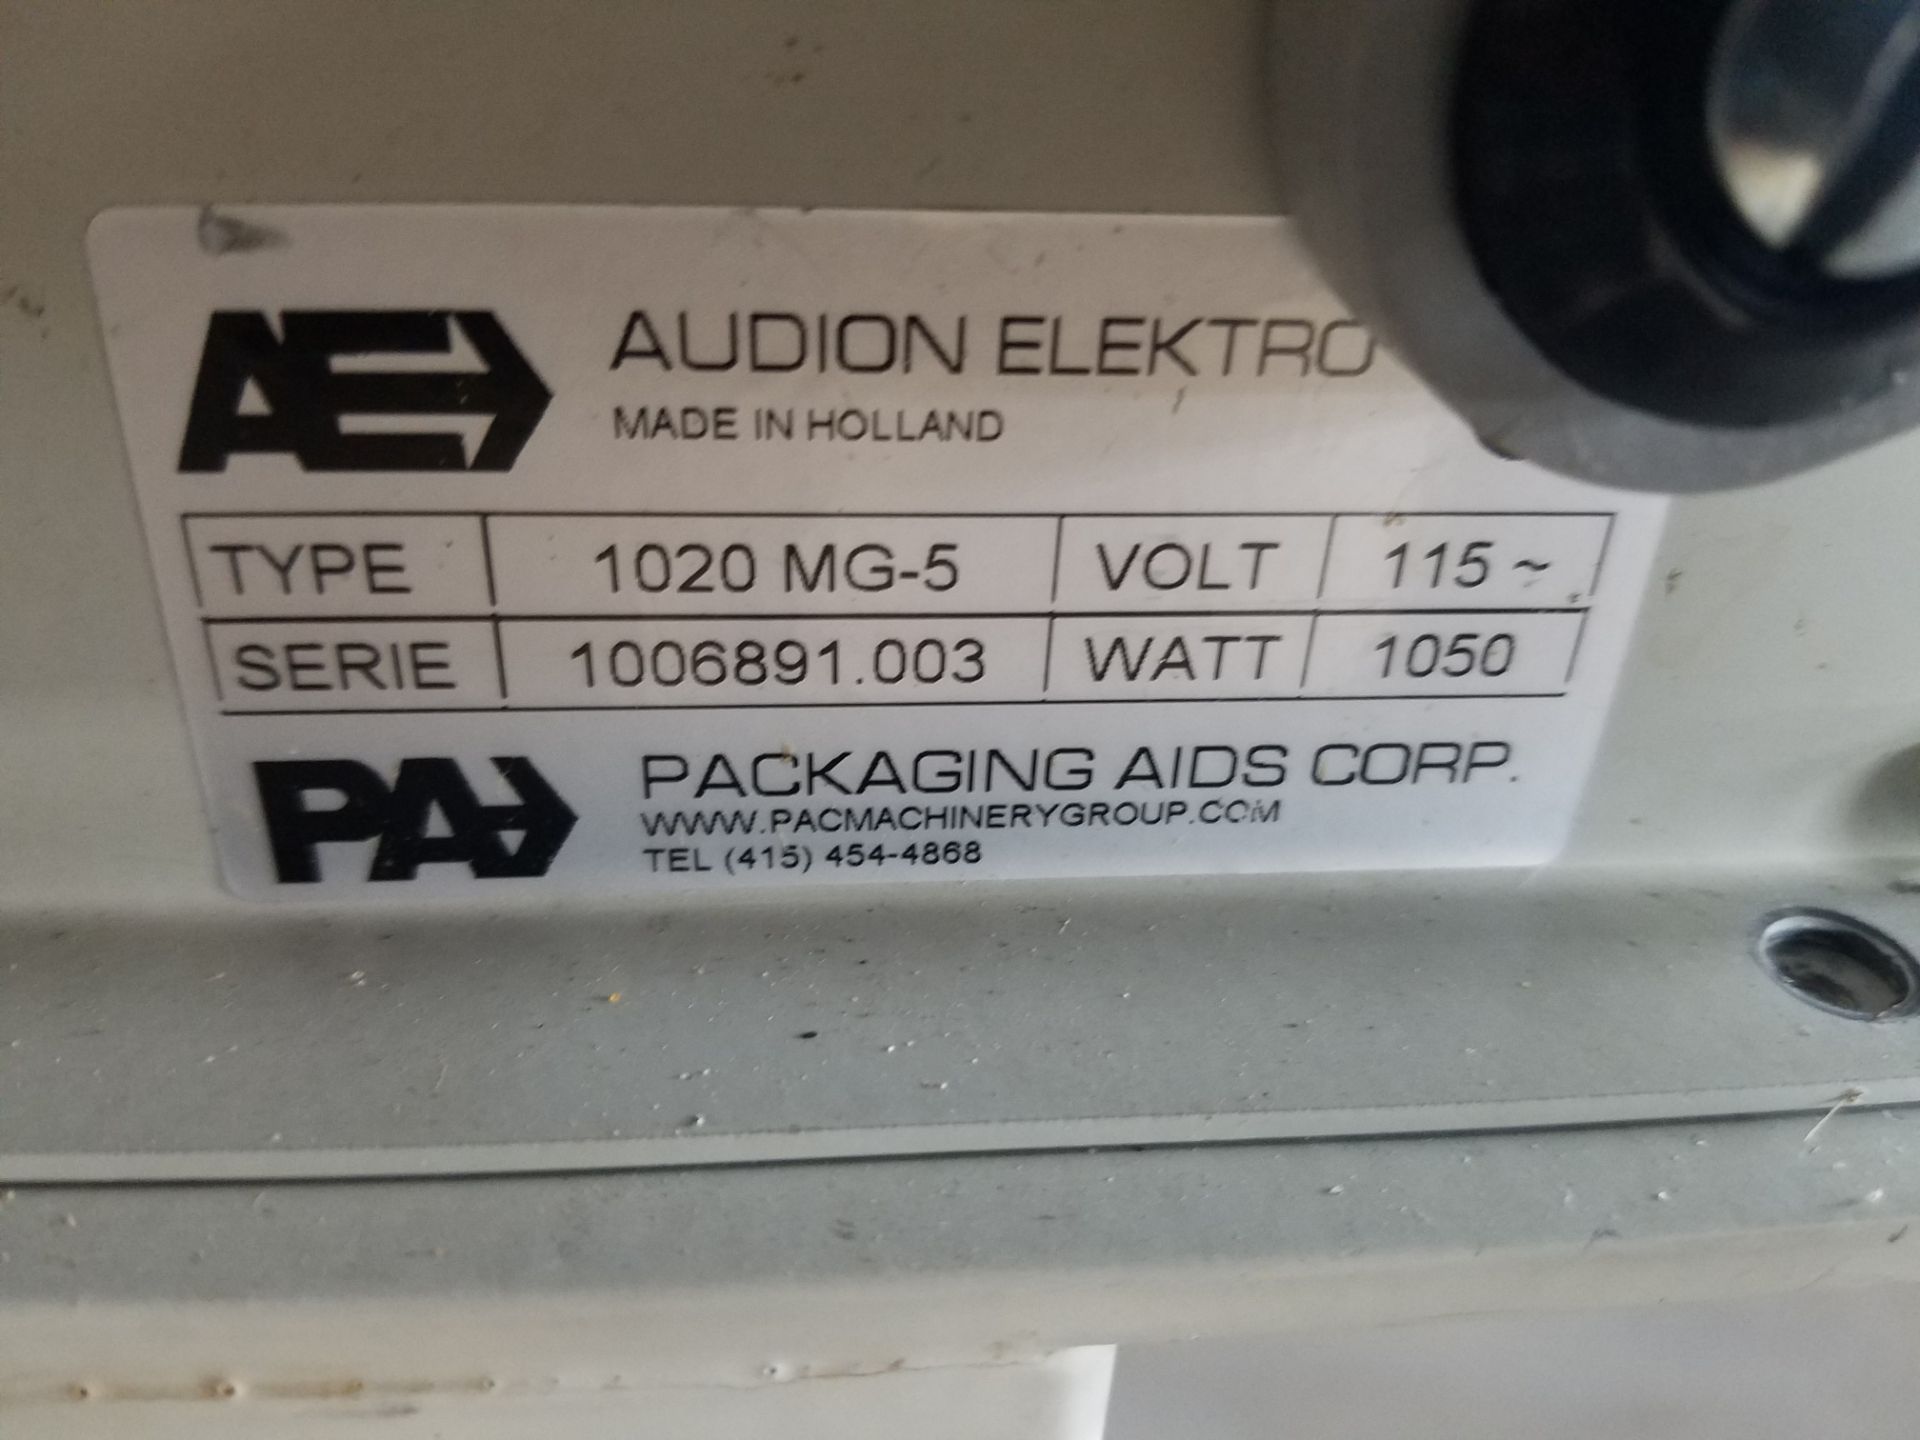 Audion Elekro 1020MG-5 Single Bar Sealer, 40", S/N 1006891.003, Volt 115 - Image 3 of 3